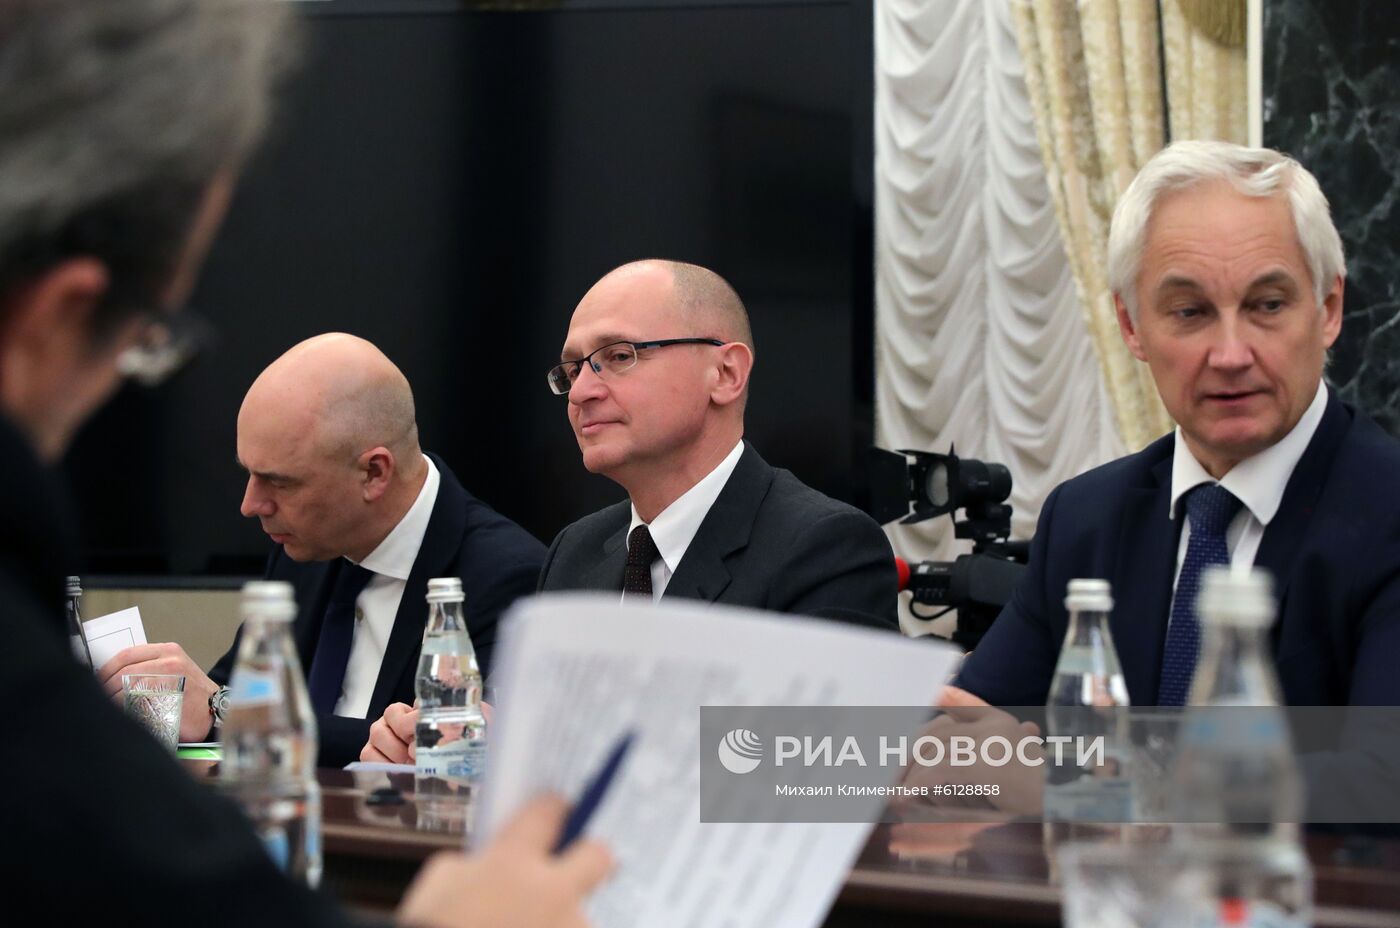 Президент РФ В. Путин провел совещание по подготовке послания президента РФ к Федеральному Собранию